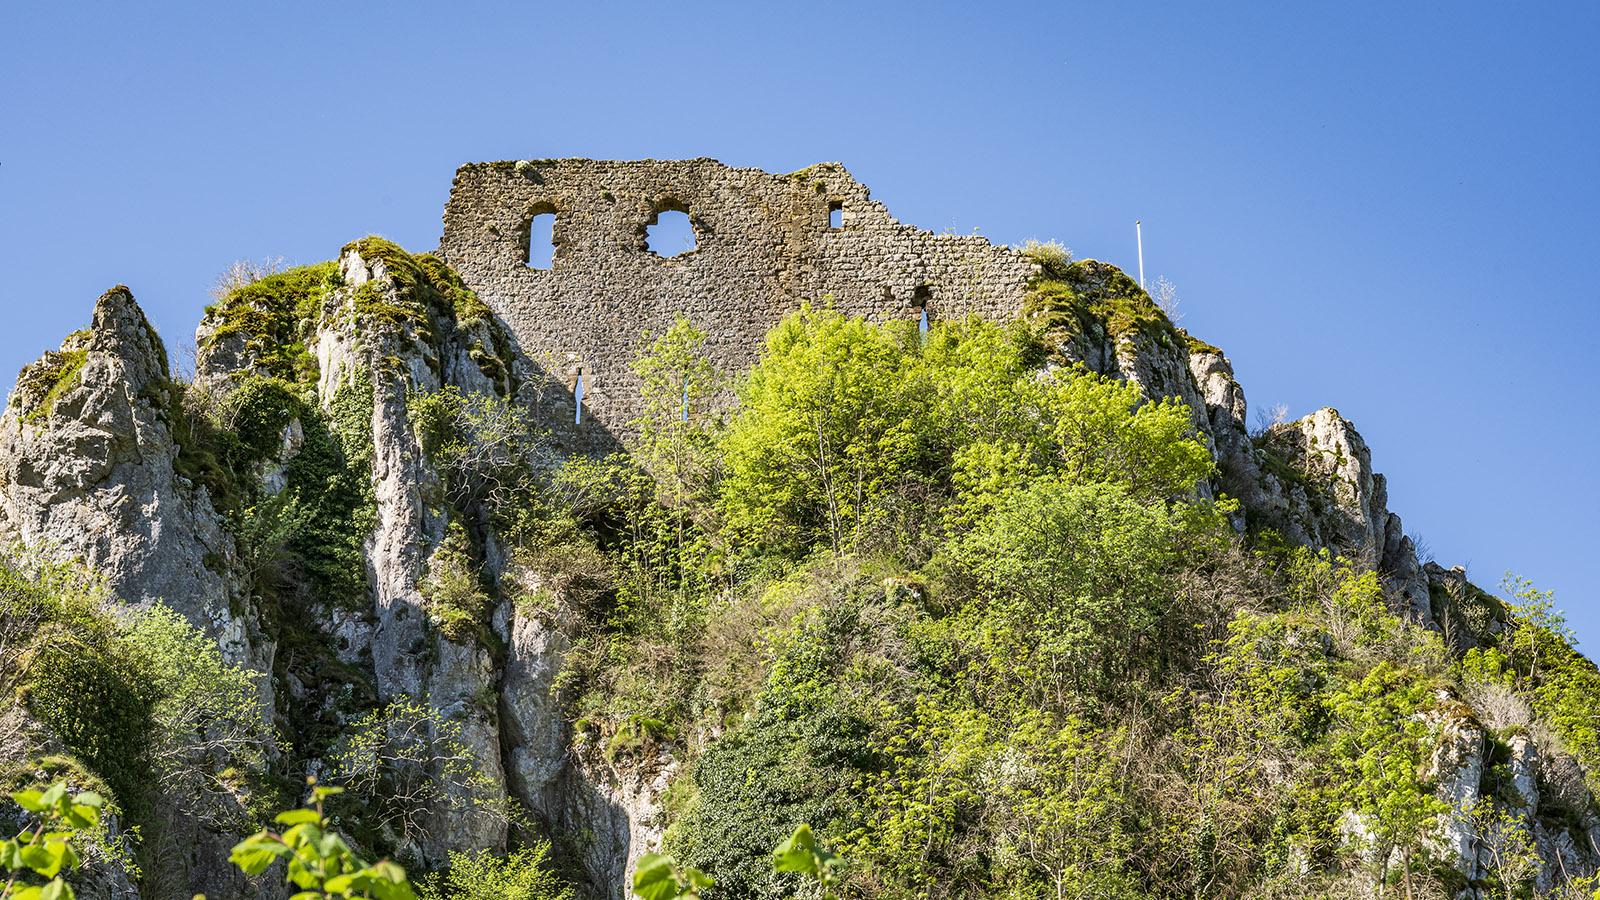 Die Burg von Roquefixade - eine malerische Ruine mit herrlicher Aussicht! Foto: Hilke Maunder